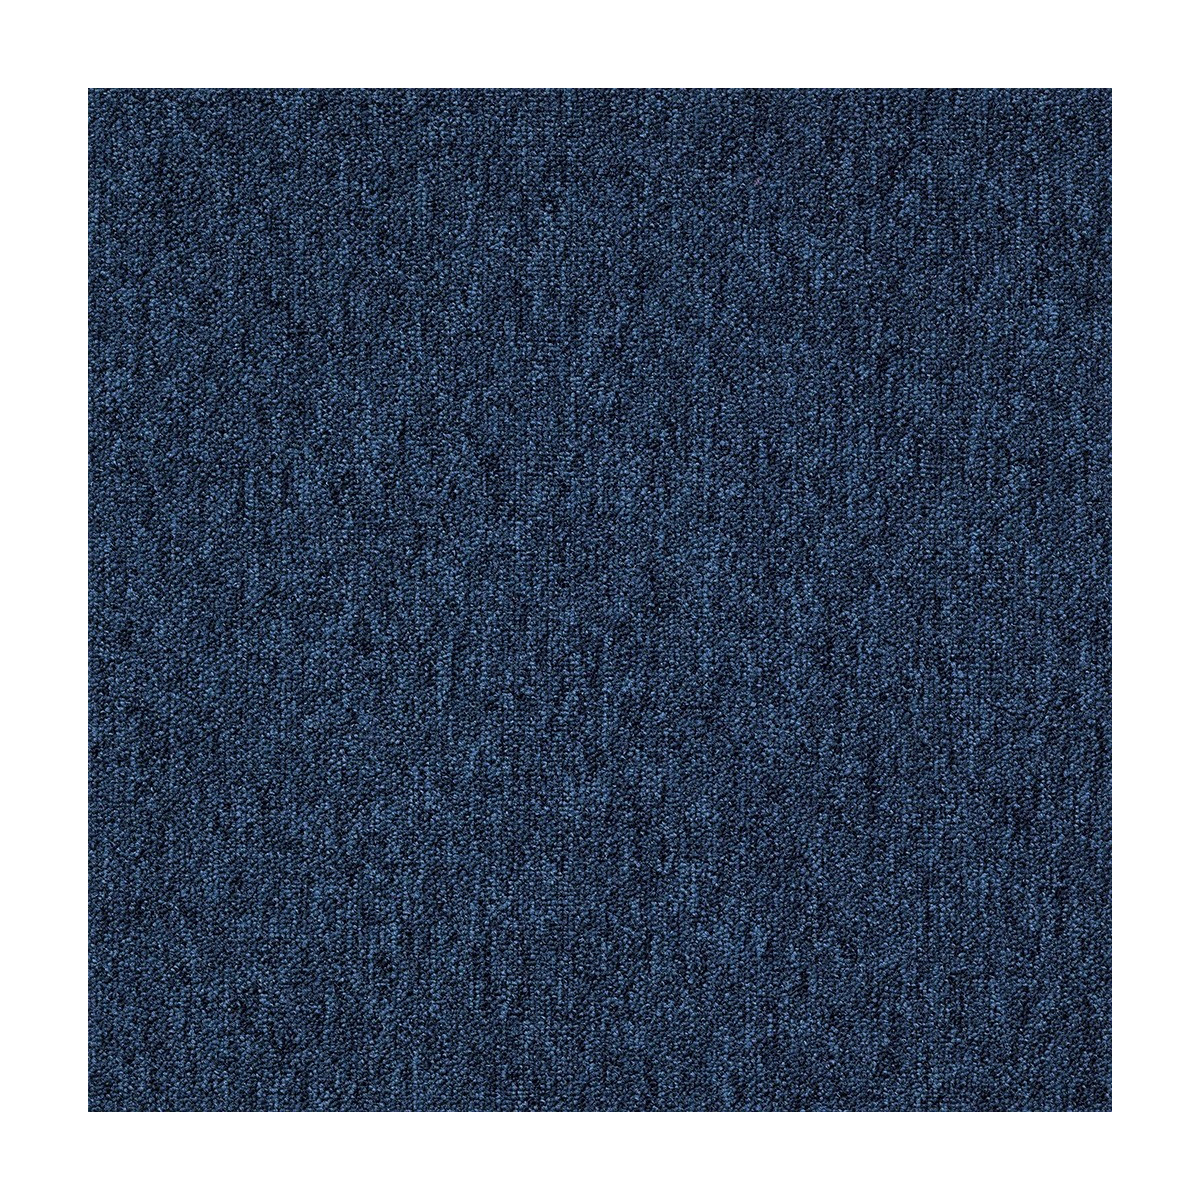 Kobercový čtverec Coral 58360-50 modrý